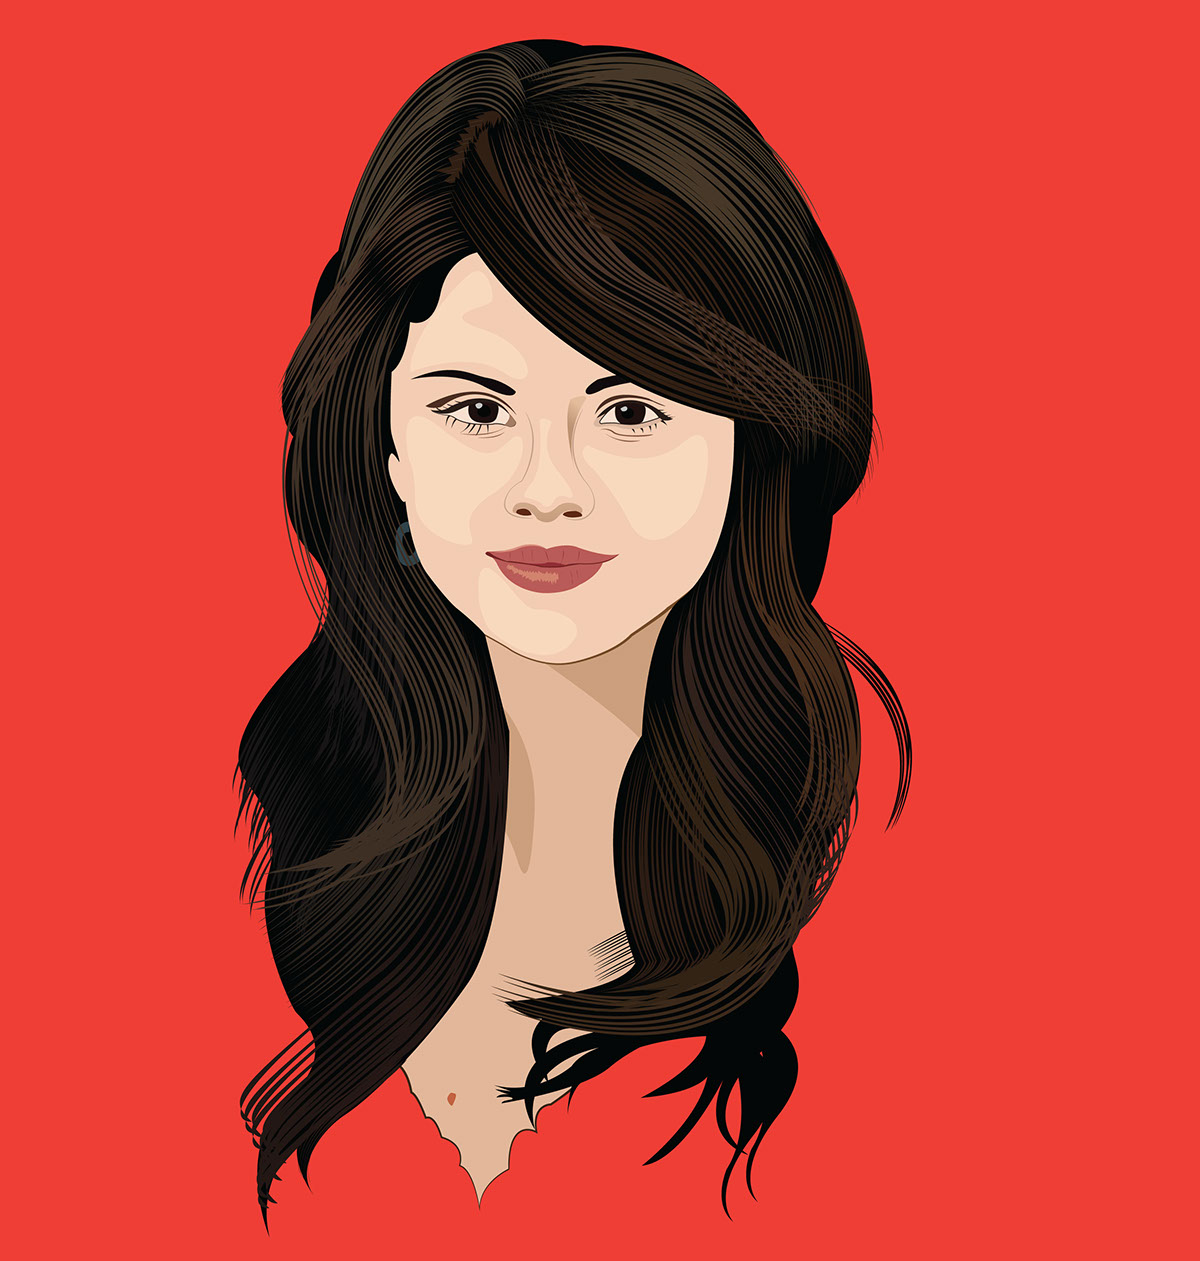 selena gomez poster Selena Gomez Poster Selena Gomez Portrait Singer Selena gomez illustration Selena Gomez Actress